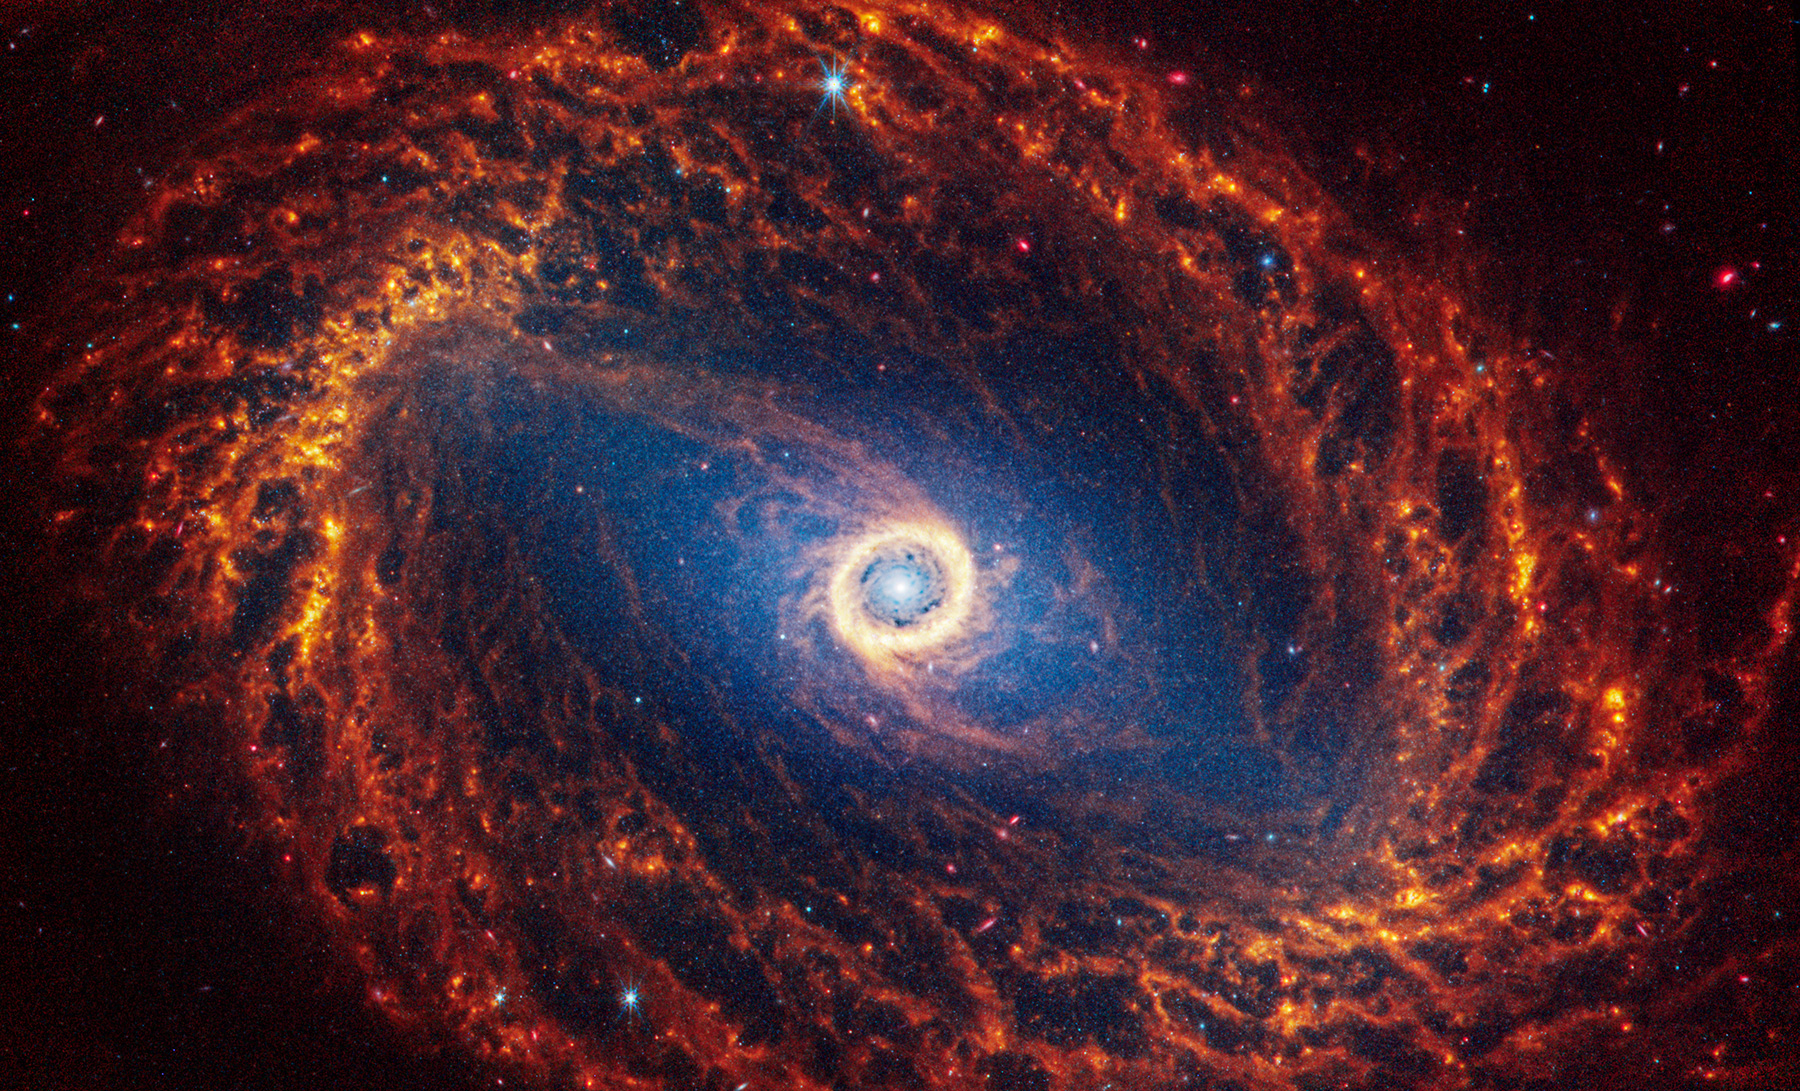 Галактика NGC 1512 в созвездии Часы. Находится на расстоянии около 30 млн световых лет от Солнечной системы. Яркое кольцо в центре галактики&nbsp;&mdash; это недавно сформировавшиеся звезды